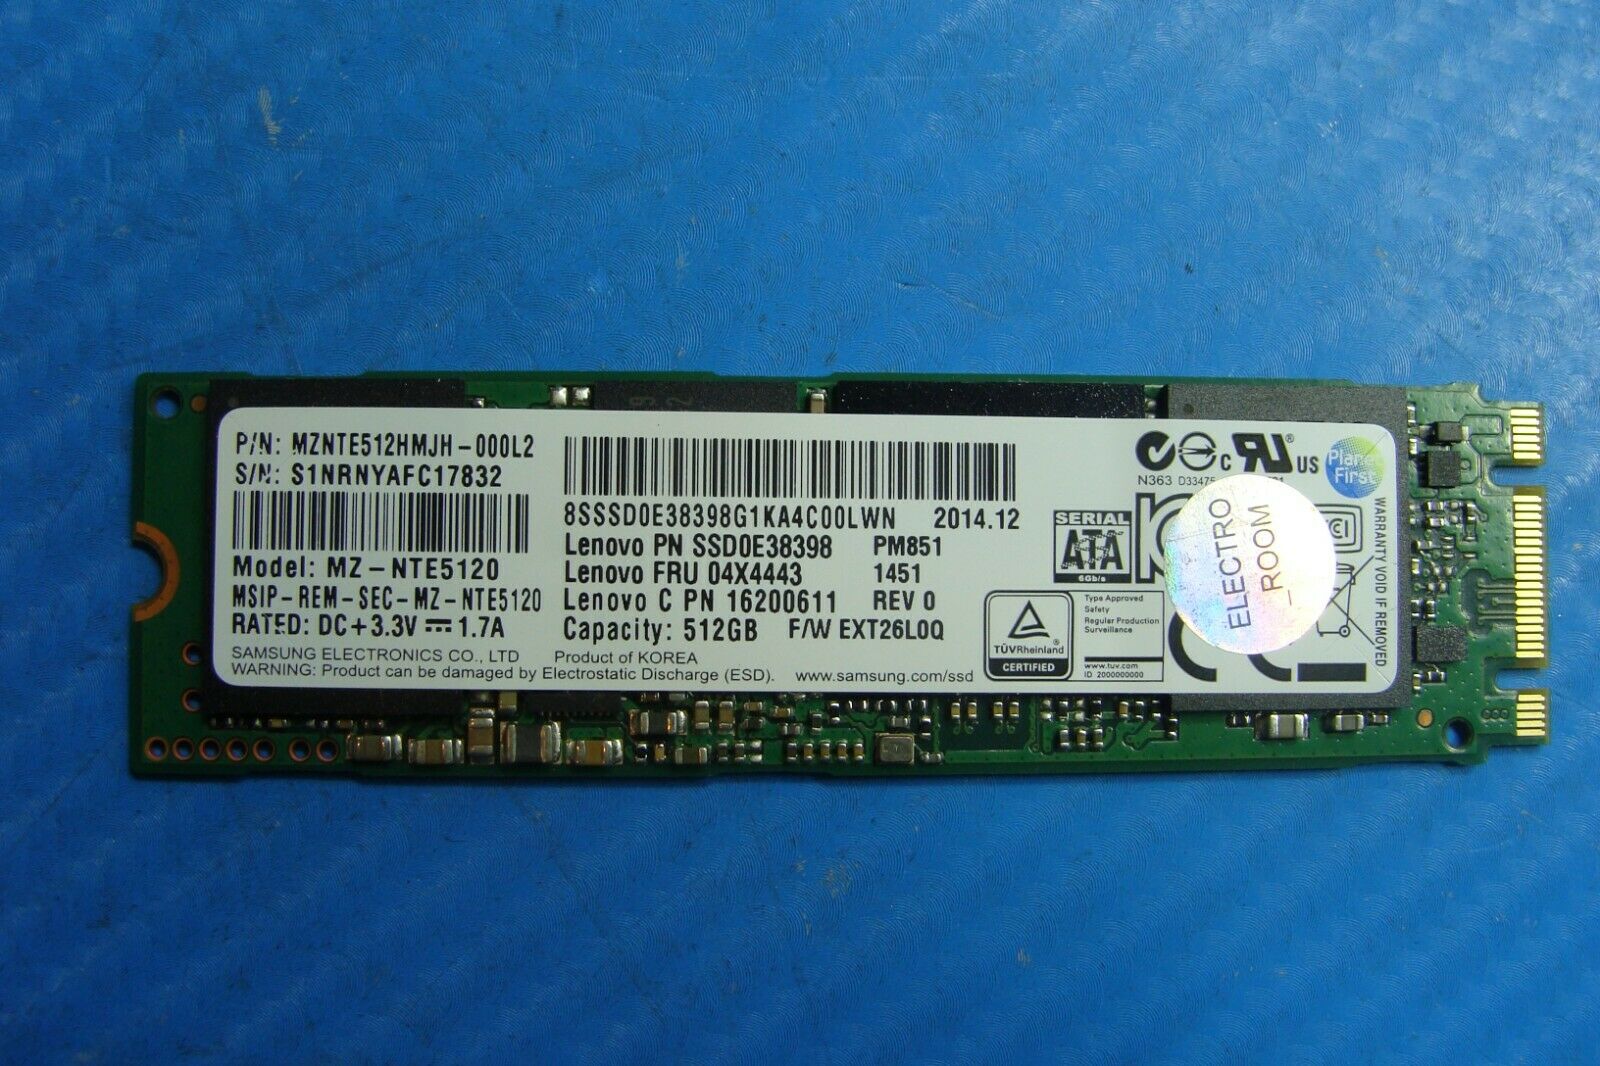 Lenovo 3 Pro 1370 Samsung M.2 512GB SSD Solid State Drive mznte512hmjh-000l2 